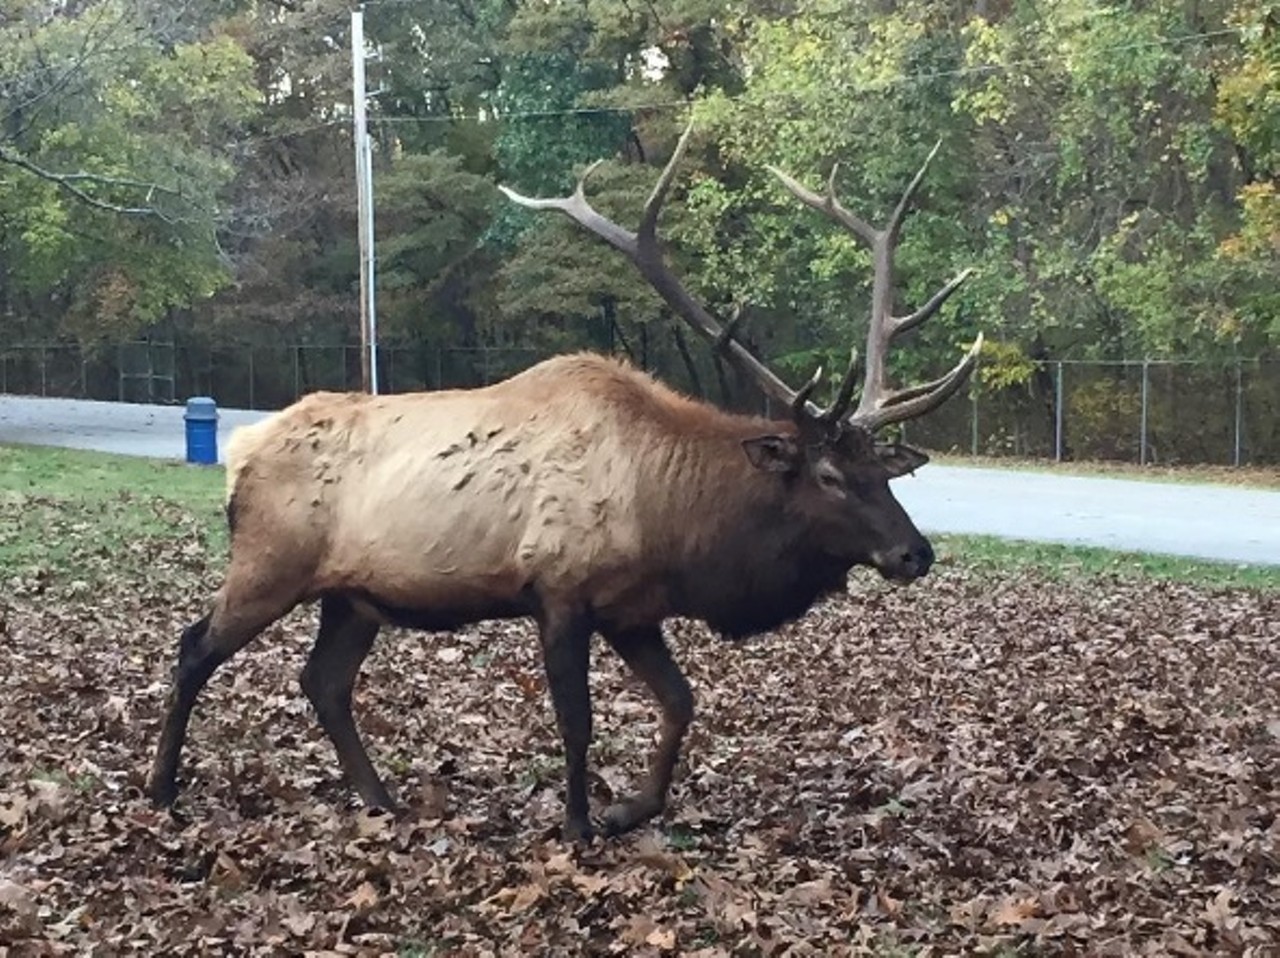  Visit Lone Elk Park